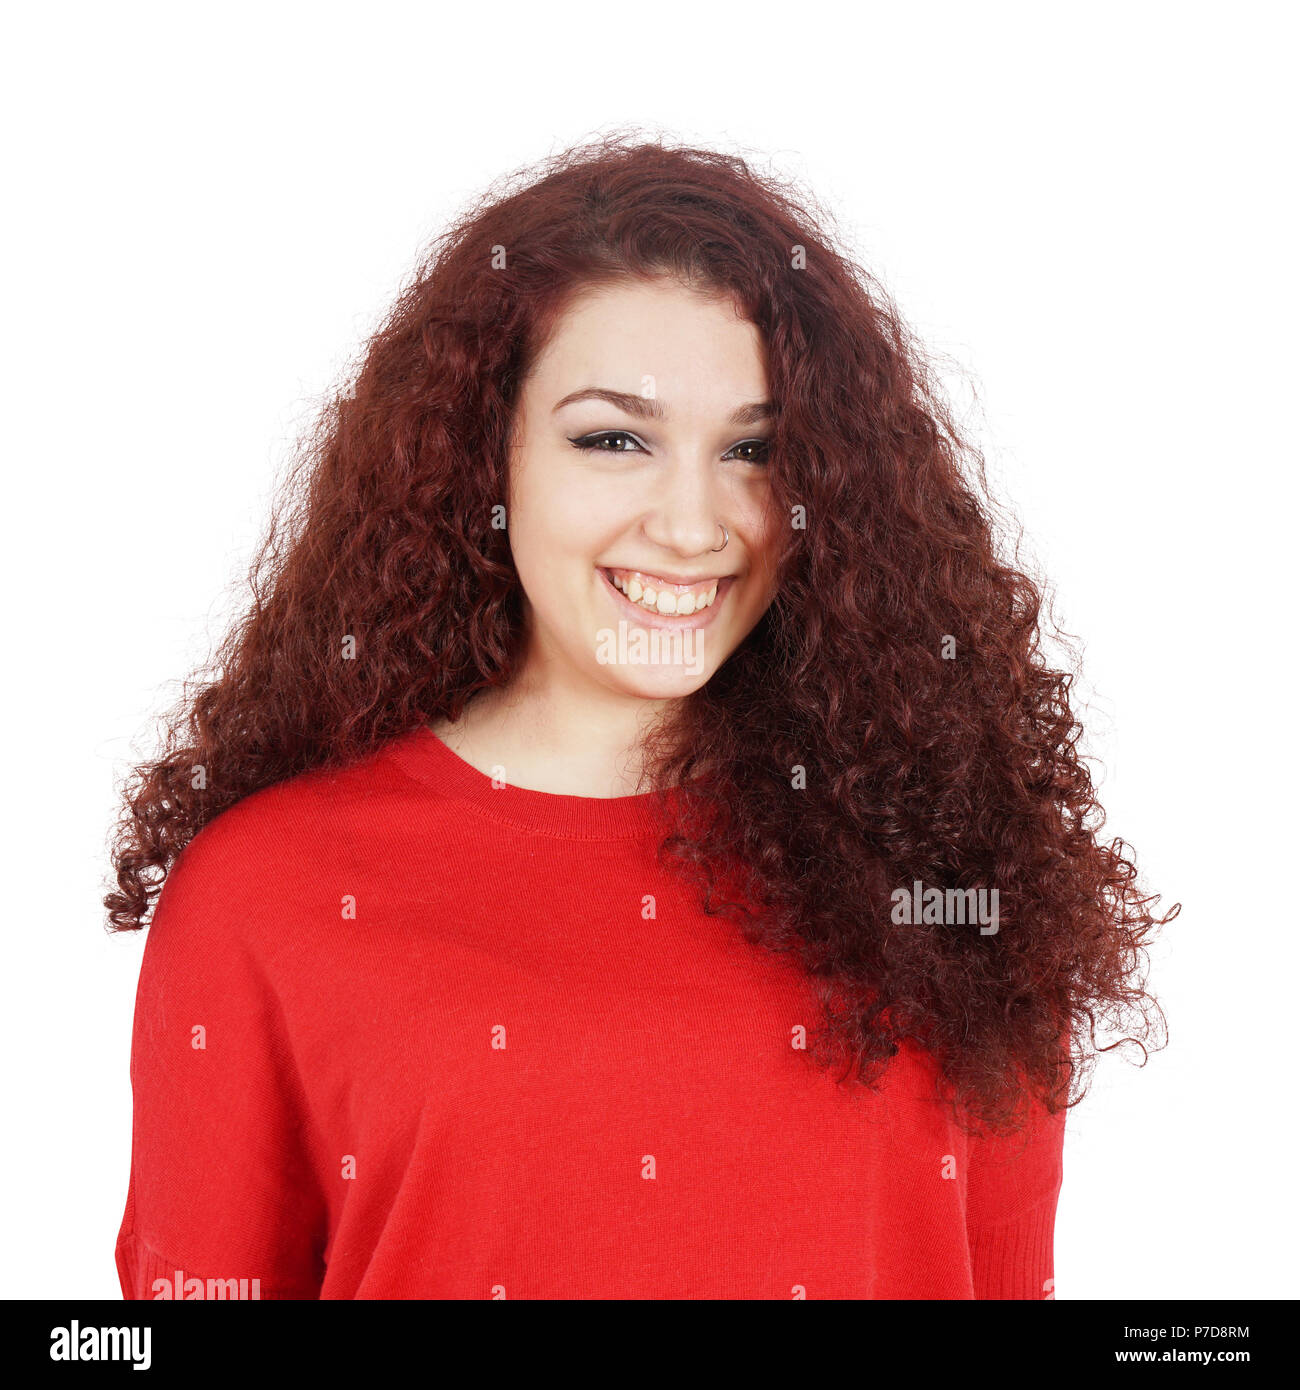 Jeune femme heureuse avec un grand sourire à pleines dents et cheveux bouclés, isolated on white Banque D'Images